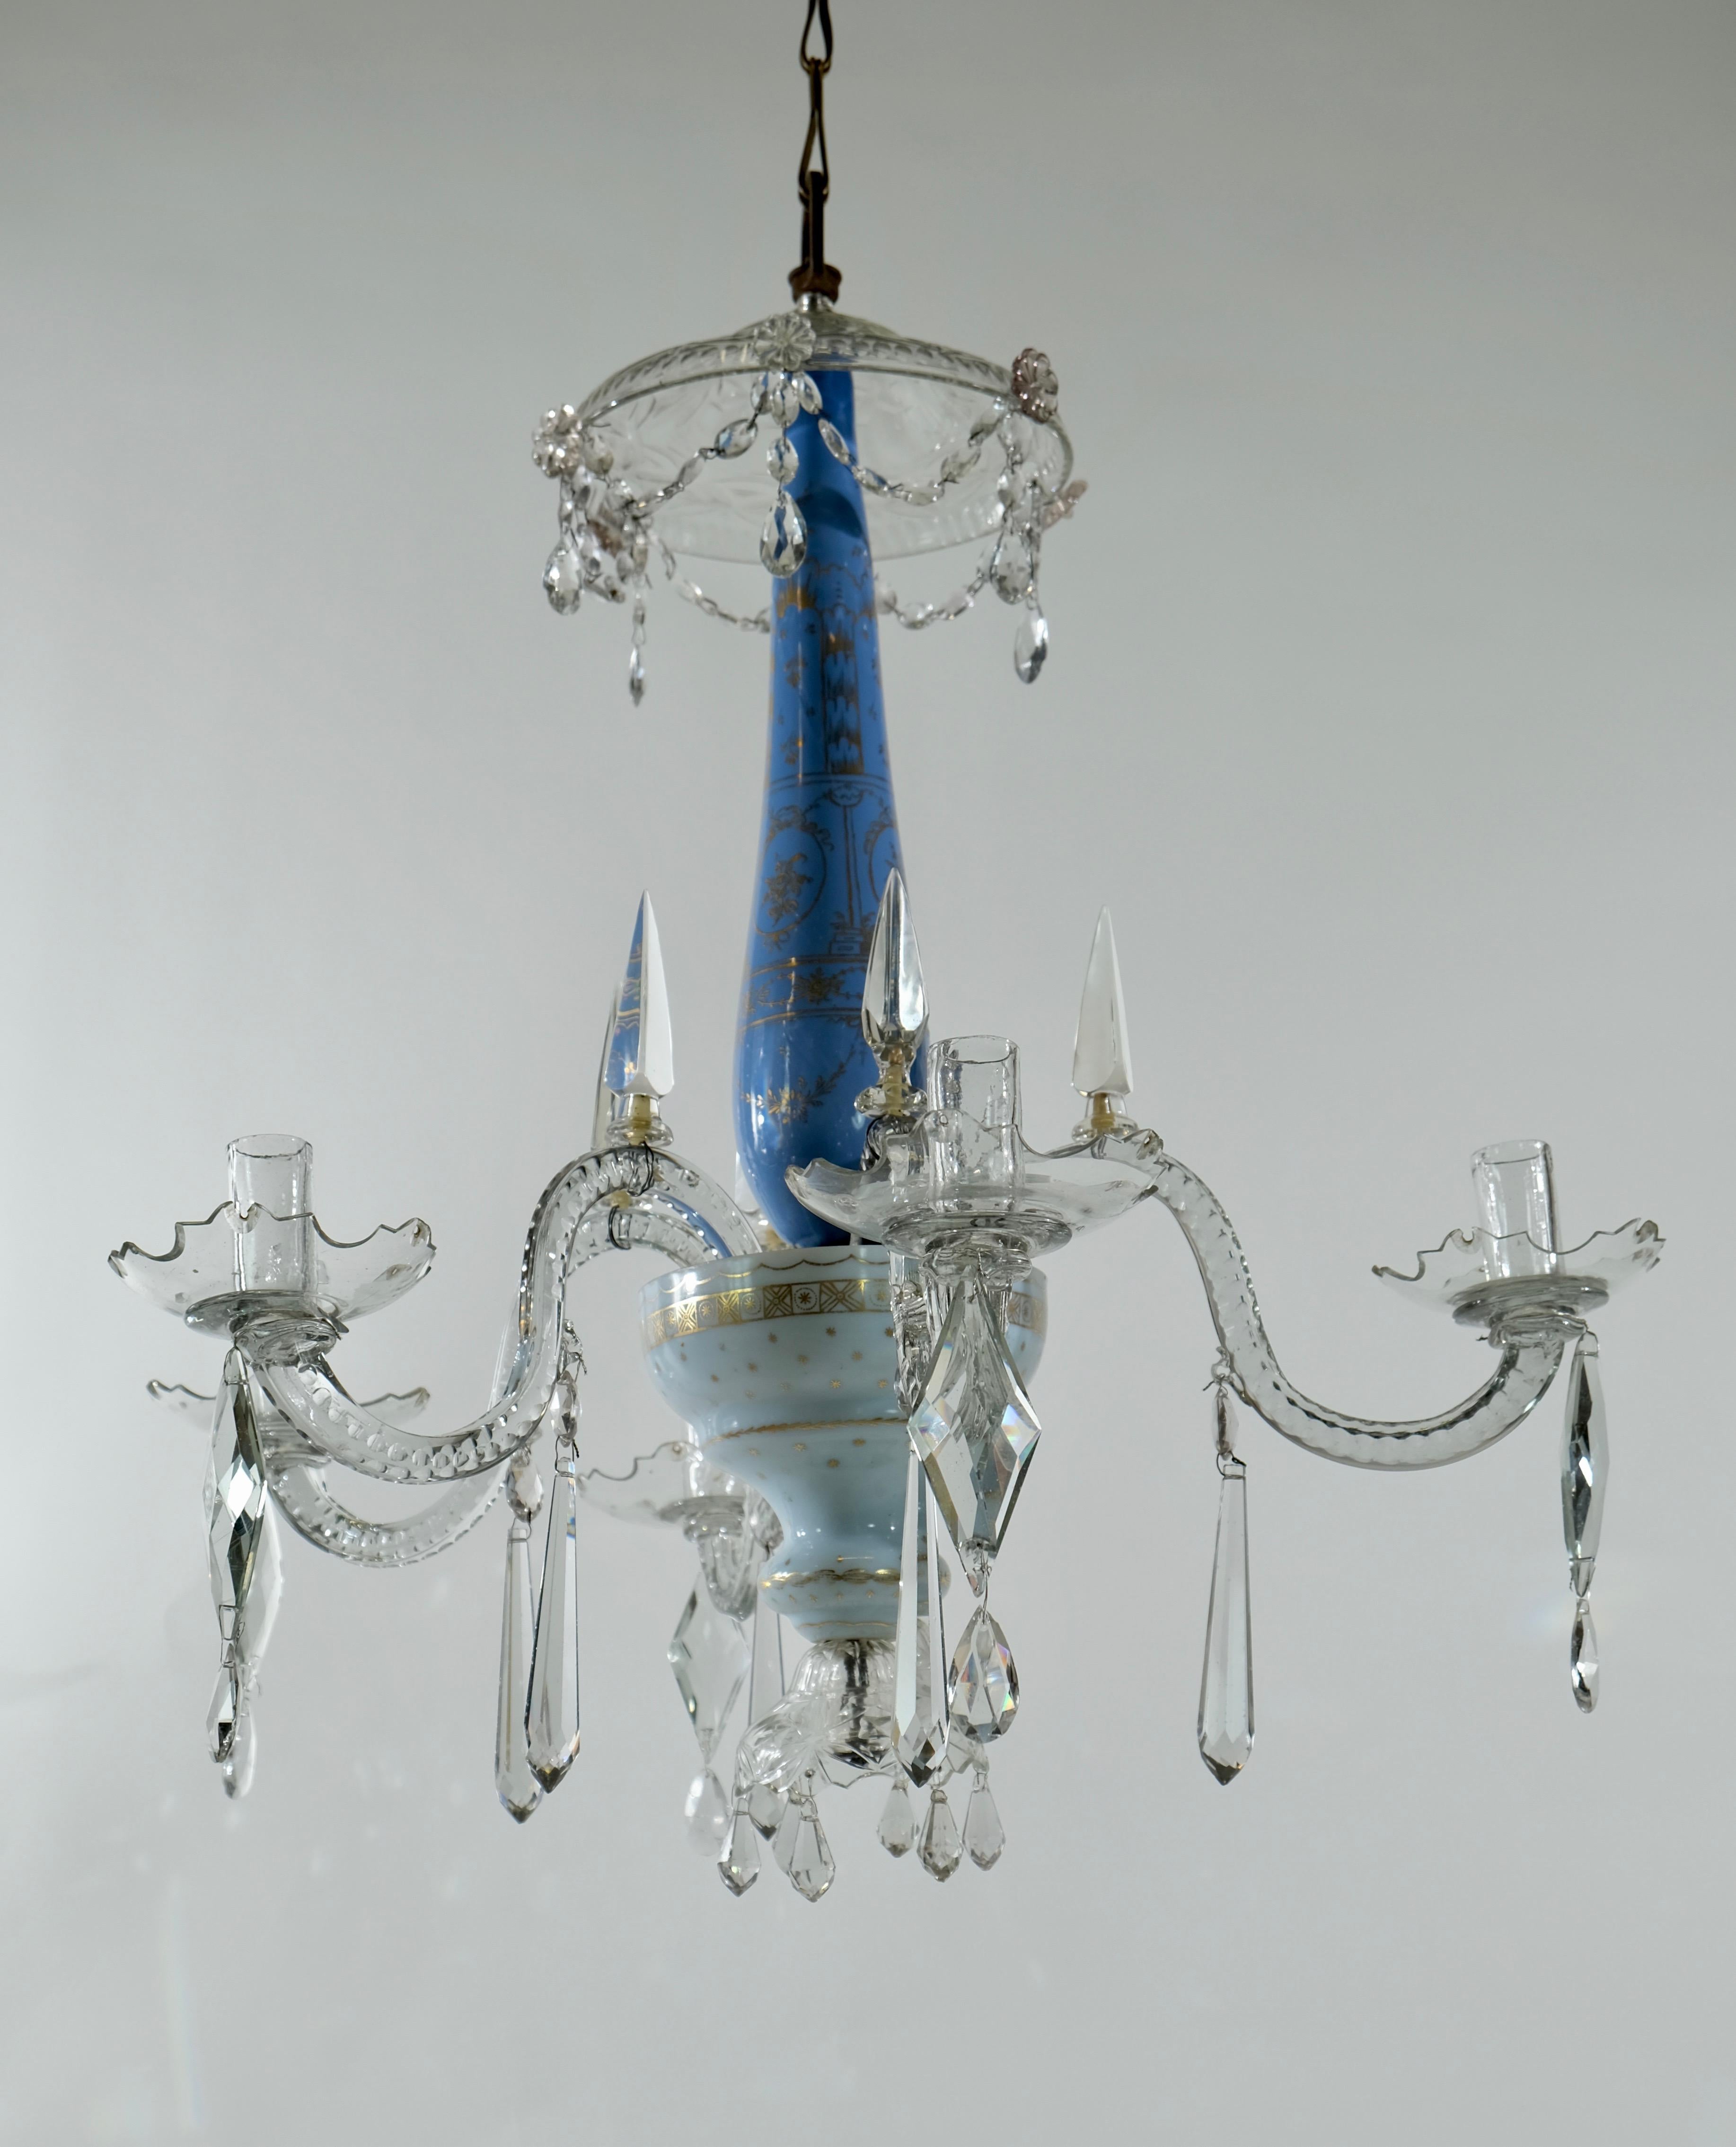 Un rare lustre russe fabriqué à la fin du 18ème siècle. L'urne centrale en verre soufflé turquoise est peinte de guirlandes, etc., dans un style typique de Louix XVl. Le bol inférieur en verre blanc est peint en doré avec le même motif. Du bol en